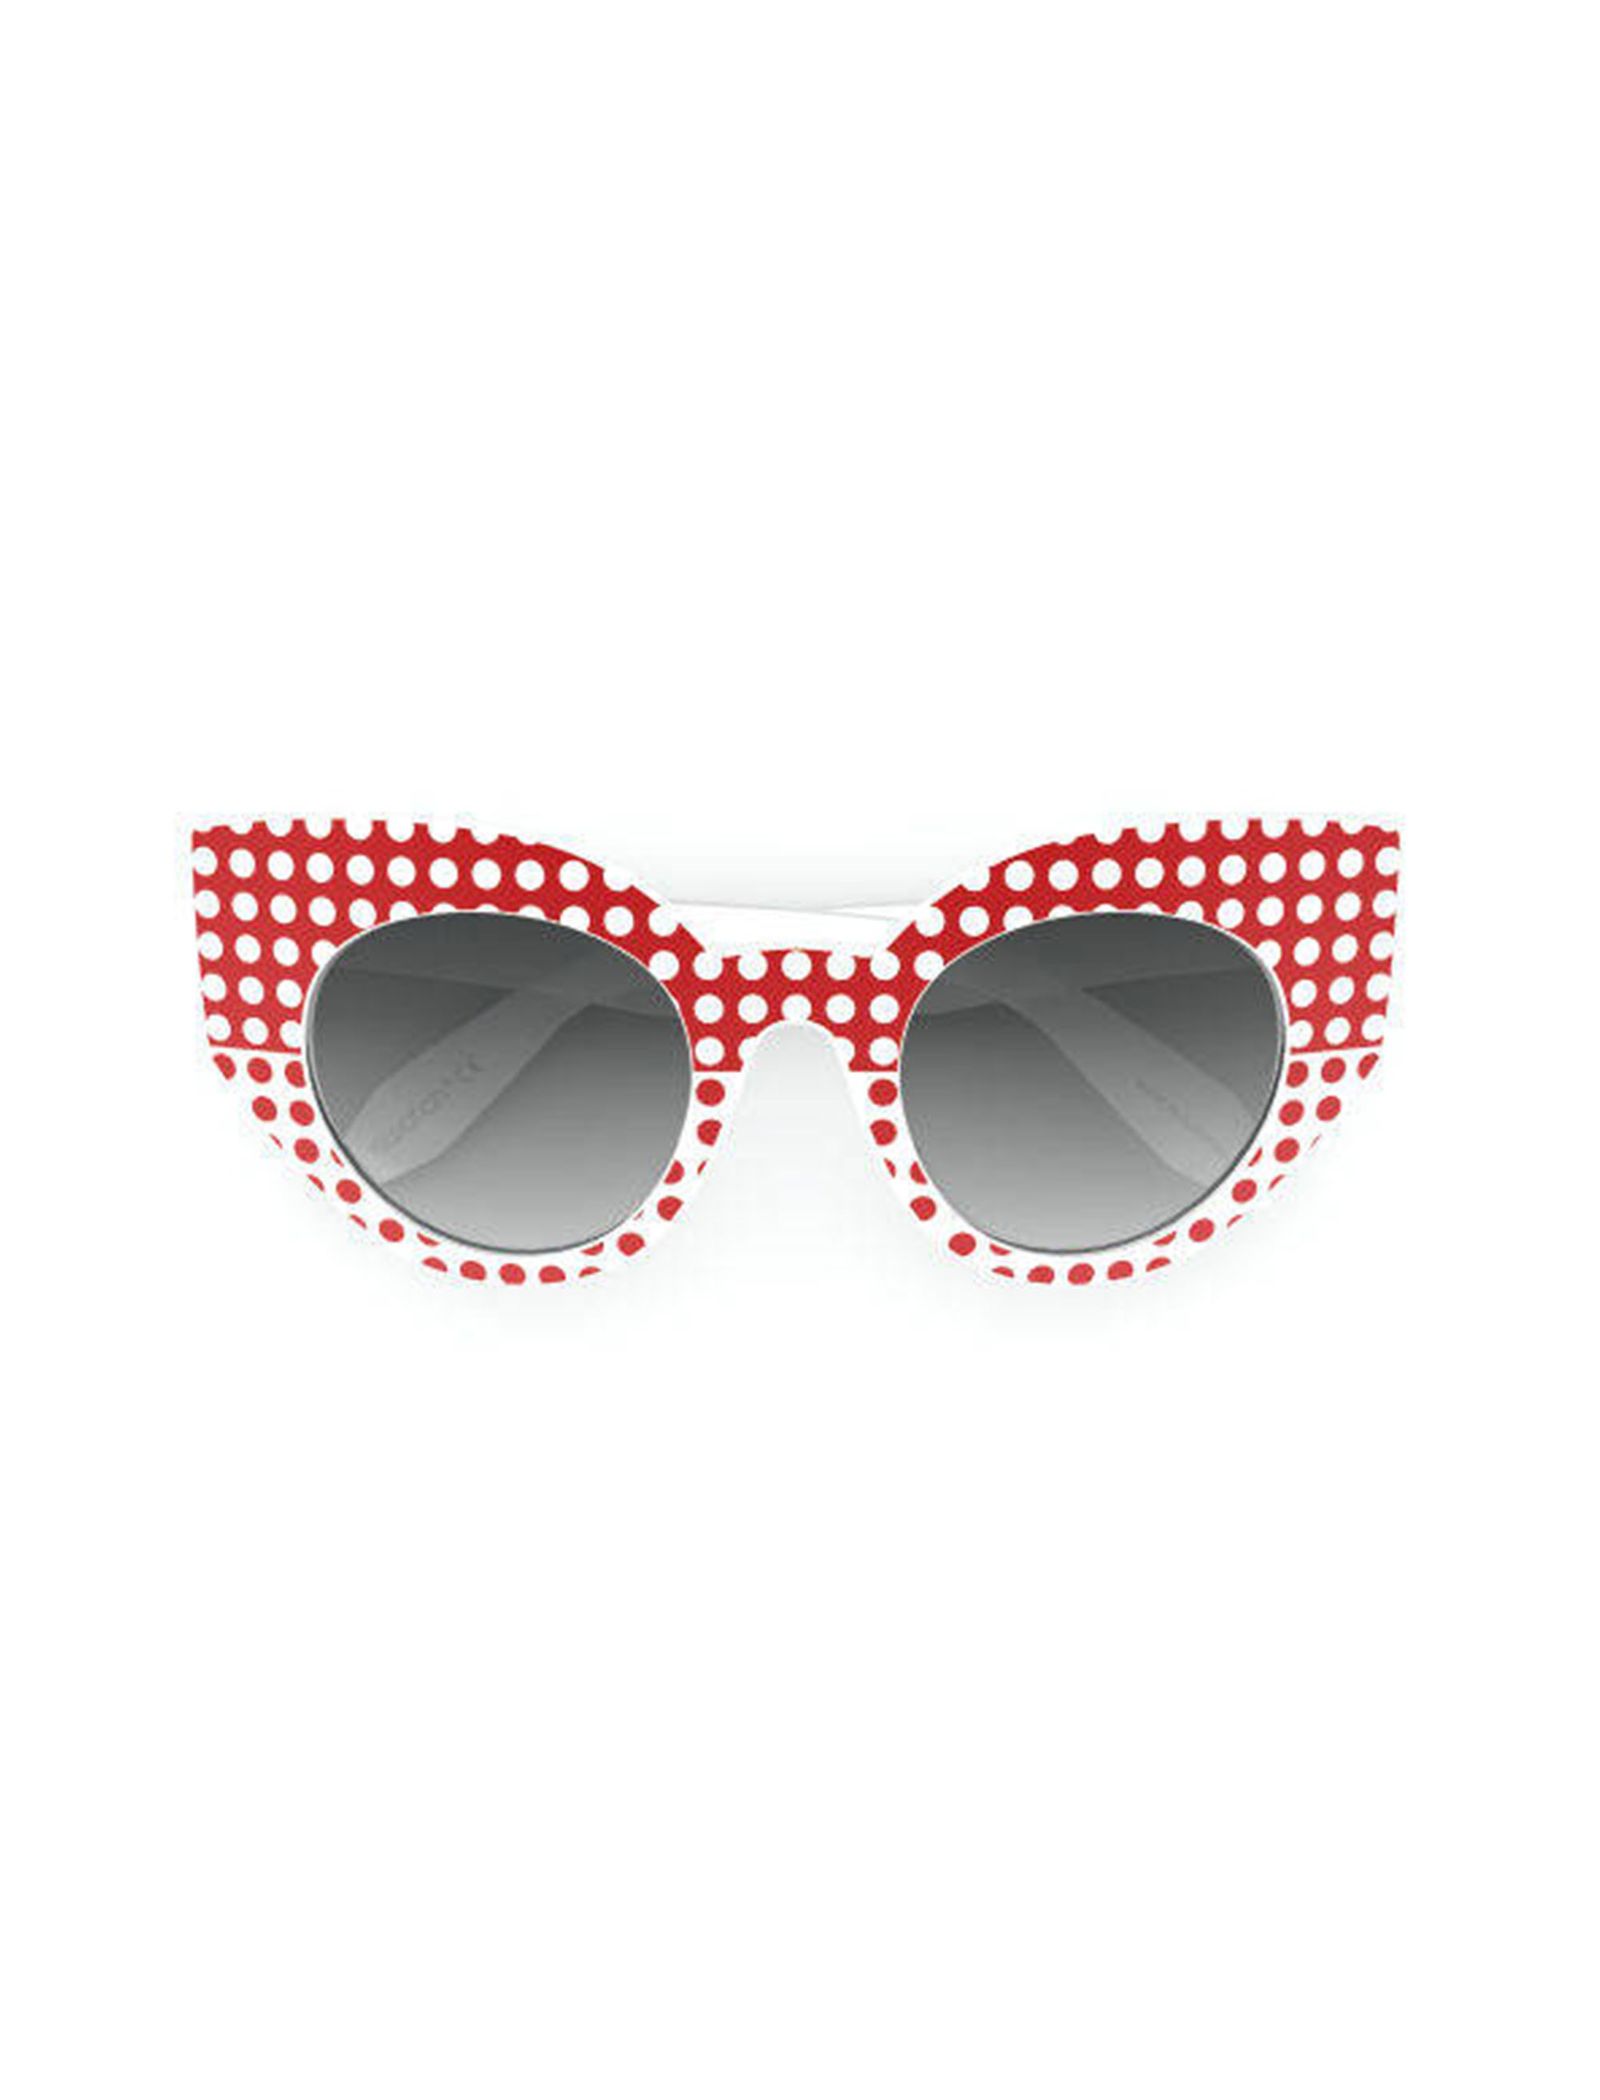 عینک آفتابی گربه ای زنانه - سواچ - سفيد و قرمز - 4